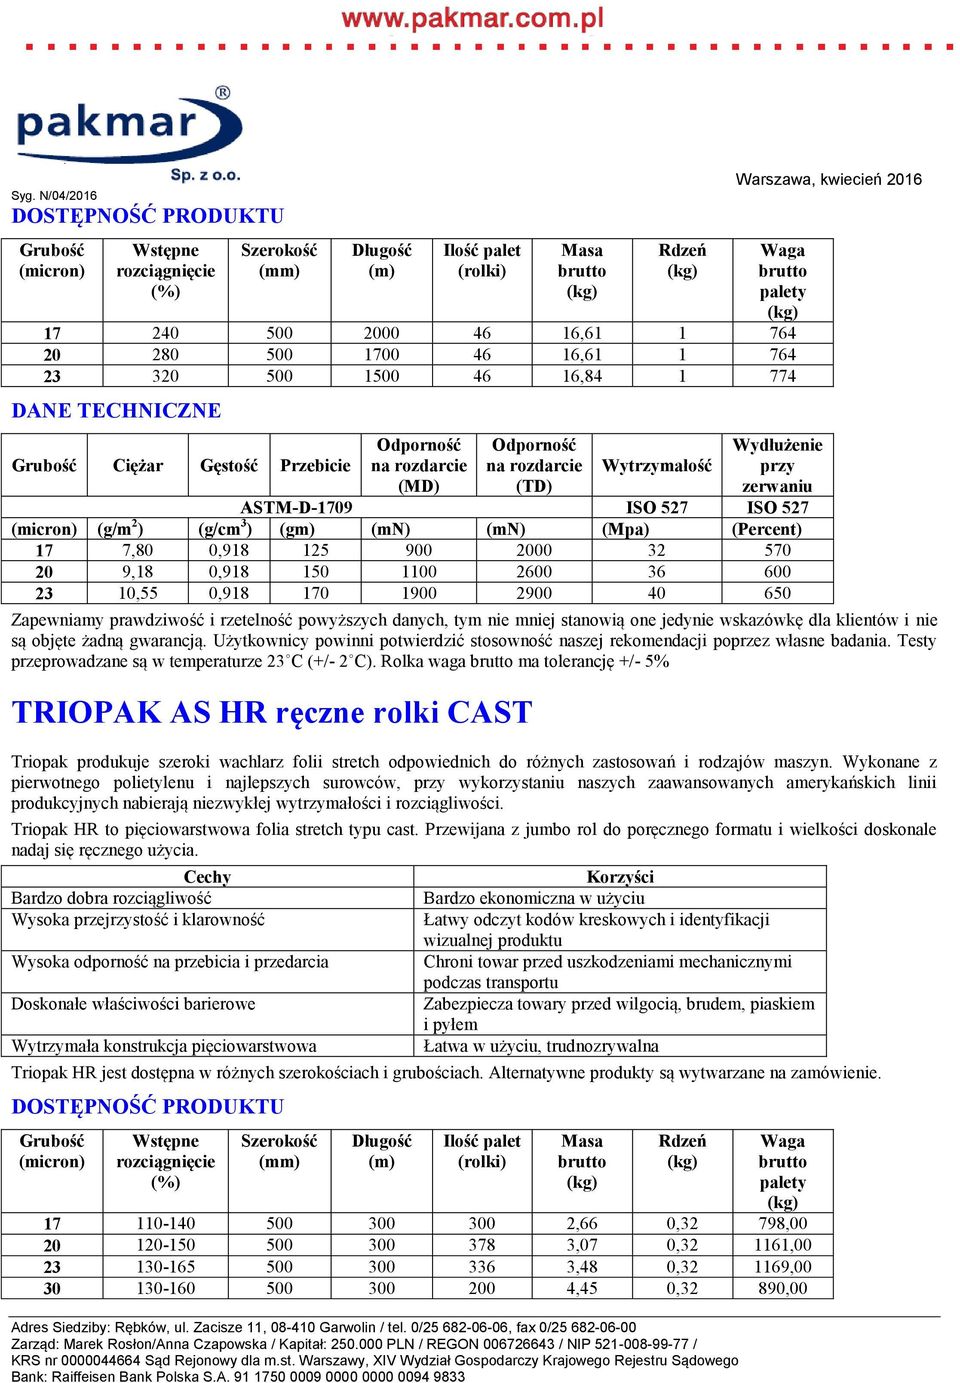 Rolka waga ma tolerancję +/- 5% TRIOPAK AS HR ręczne rolki CAST Triopak HR to pięciowarstwowa folia stretch typu cast.